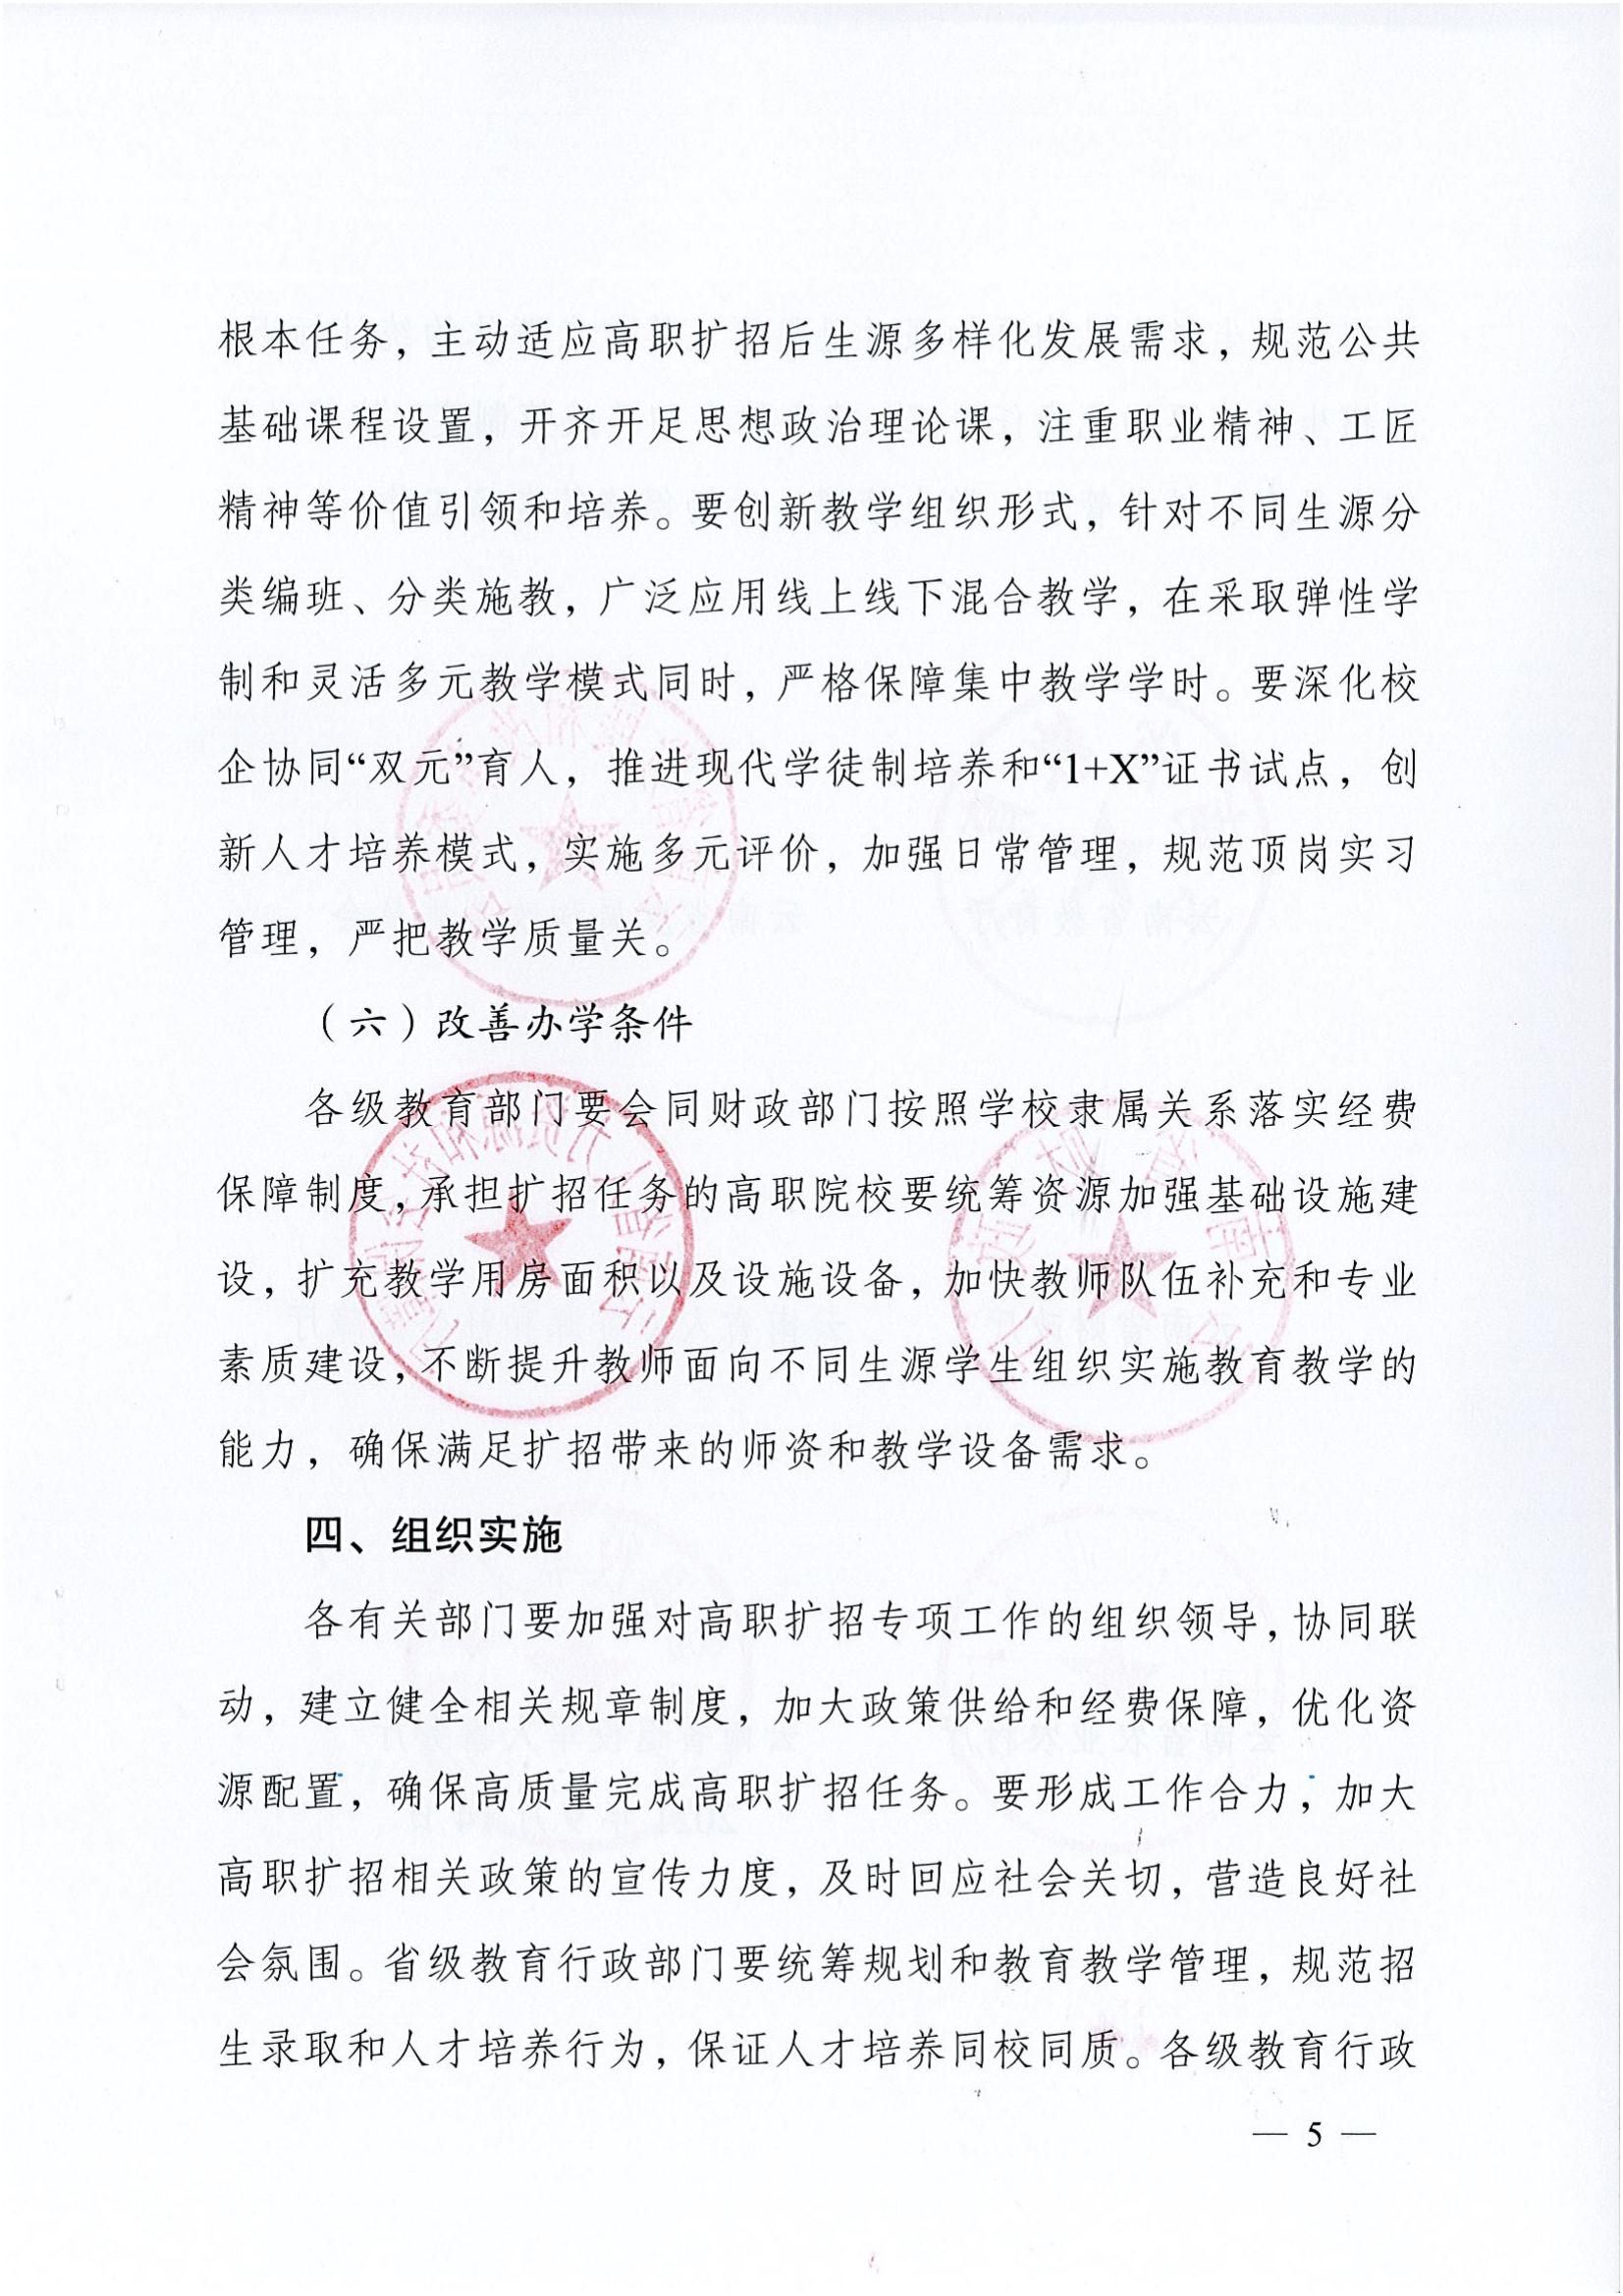 云南省教育厅发布2021年高职扩招文件